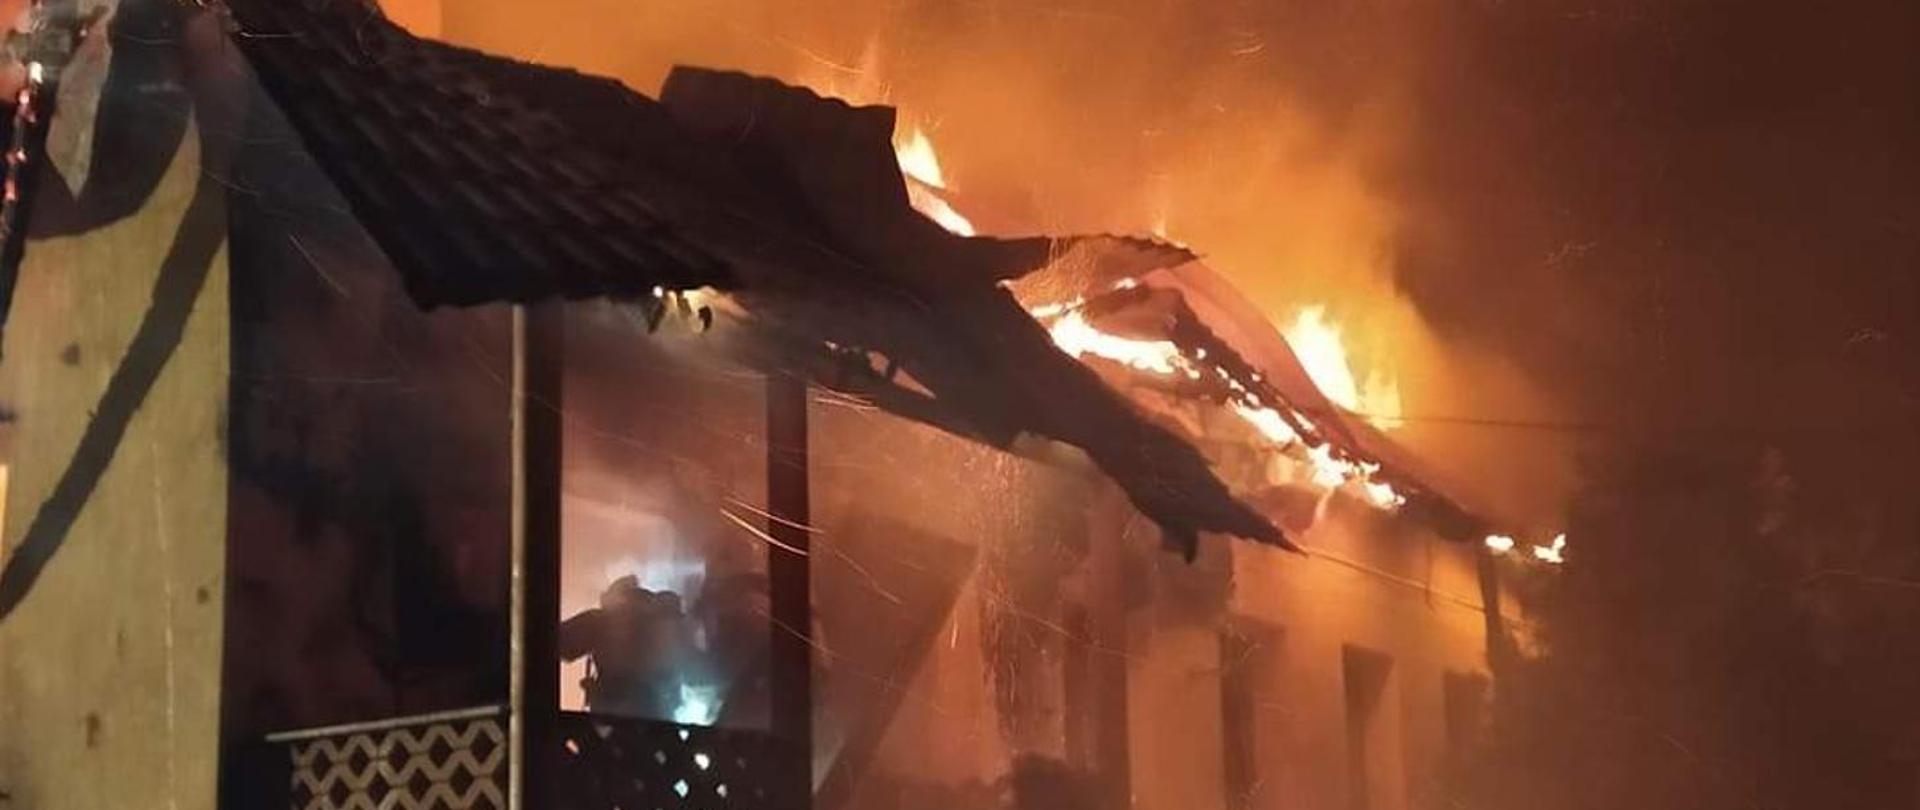 Zdjęcie nocne przedstawiające pożar parterowego budynku mieszkalnego jednorodzinnego. Płomienie wydobywają się z pod pokrycia dachu. W wejściu do płonącego budynku widoczny jest strażak w ubraniu specjalnym, wyposażony w aparat powietrzny. 